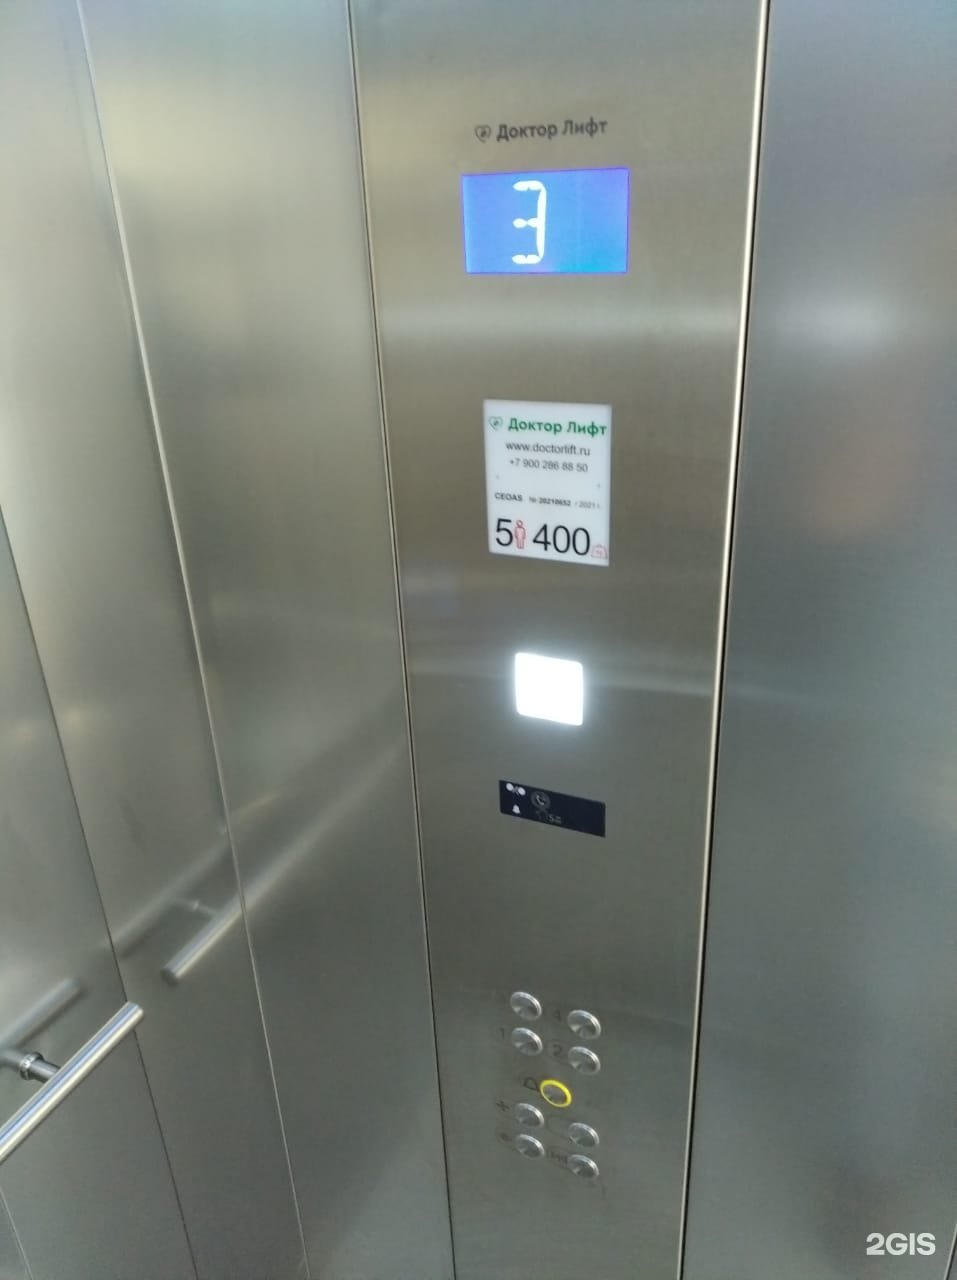 Телефон лифтовой службы. Доктор лифт Сочи. Сервисный лифт. Номер лифтовой компании. Врач в лифте.